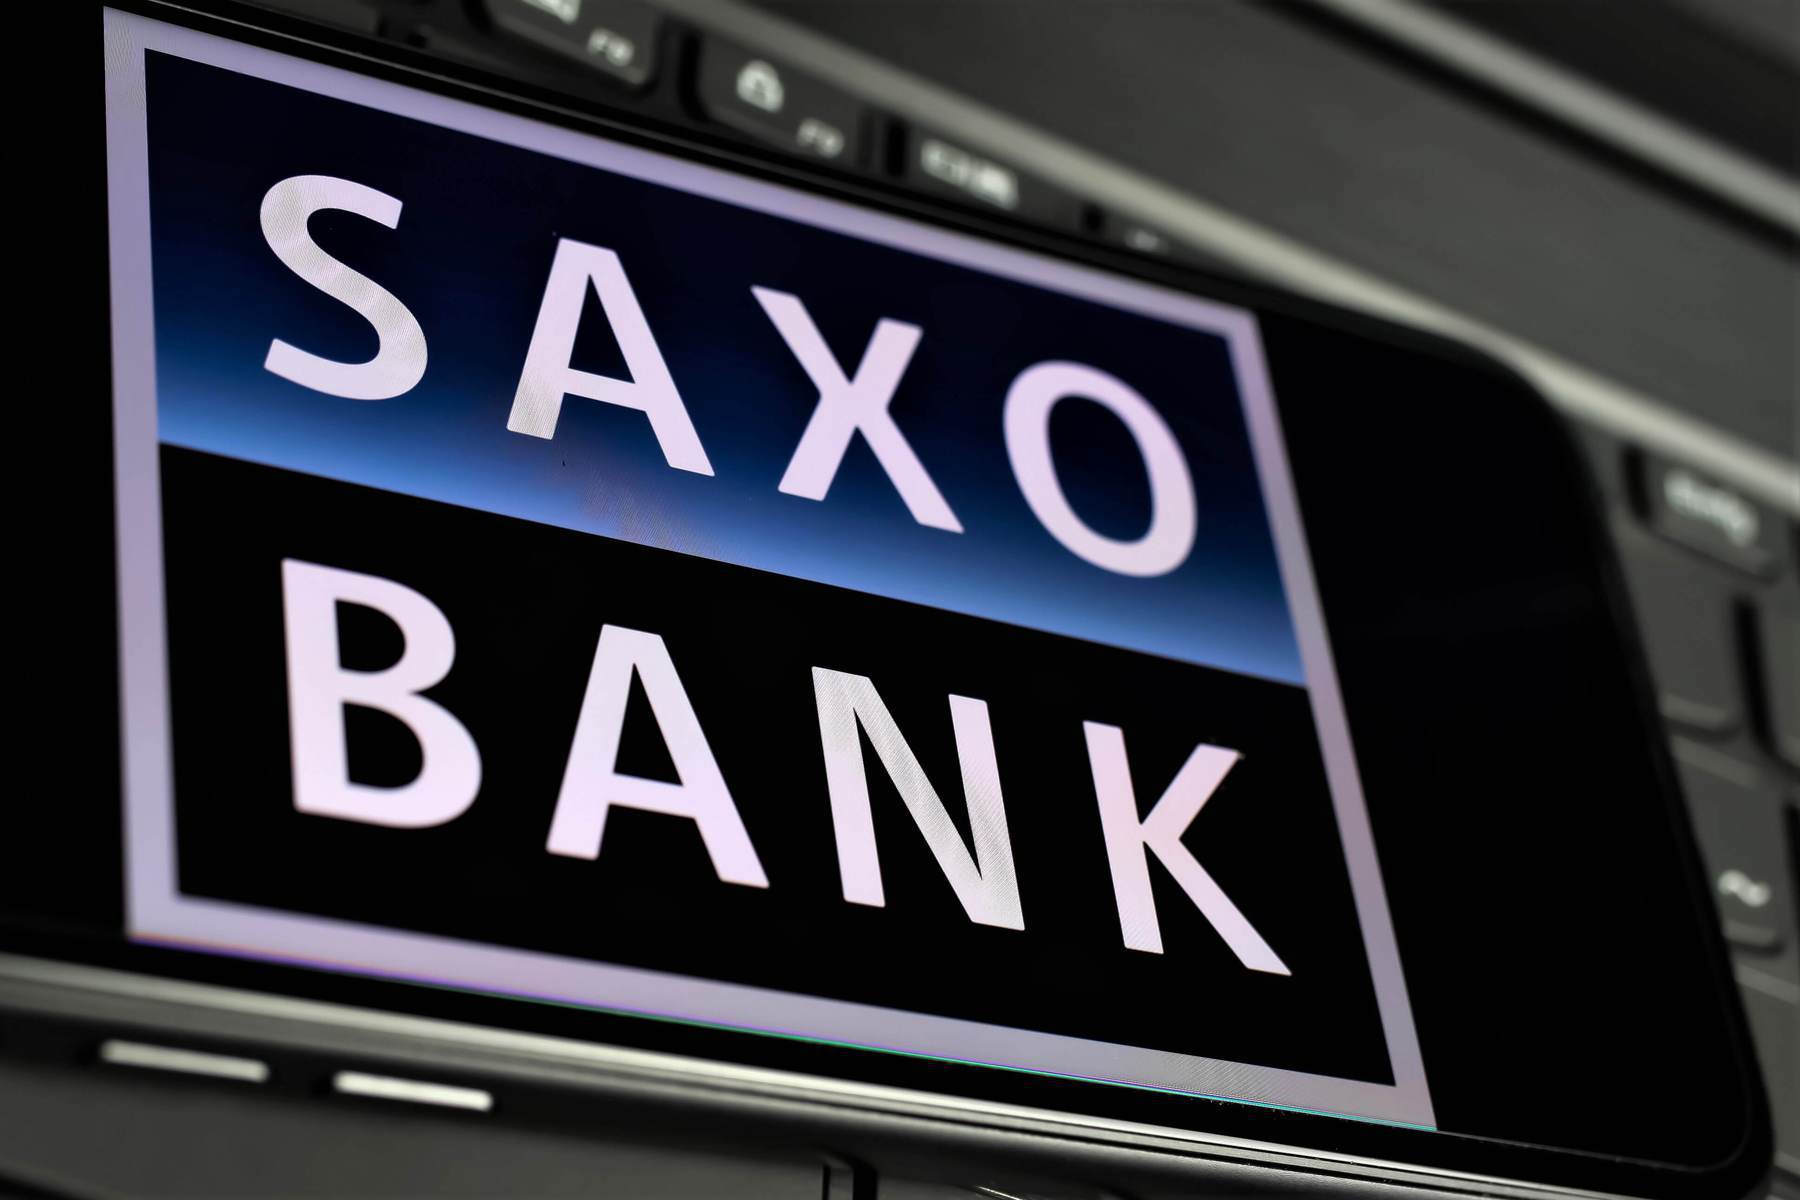 يقوم بنك ساكسو بتوظيف مصرفيين استثماريين لاستكشاف عملية البيع